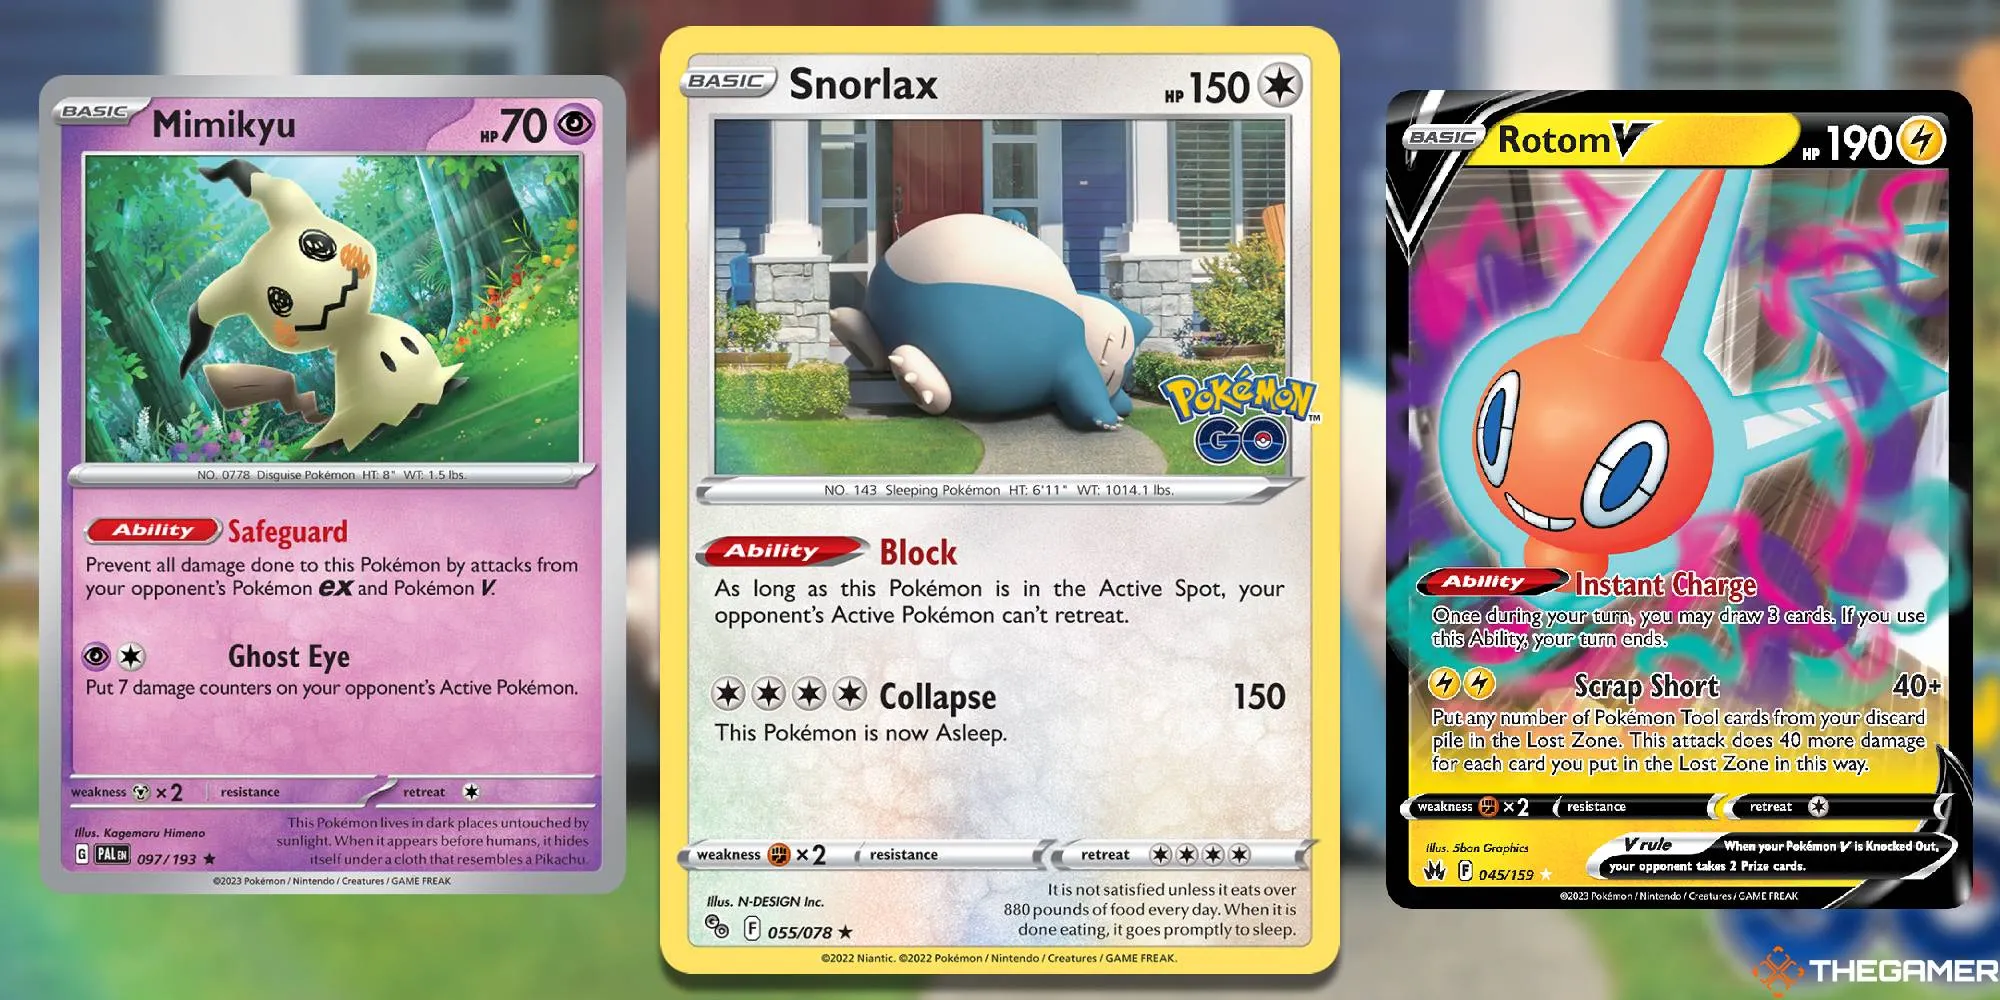 Cartes Pokémon TCG Snorlax, Rotom V et Mimikyu, sur fond de l'illustration de la carte Snorlax